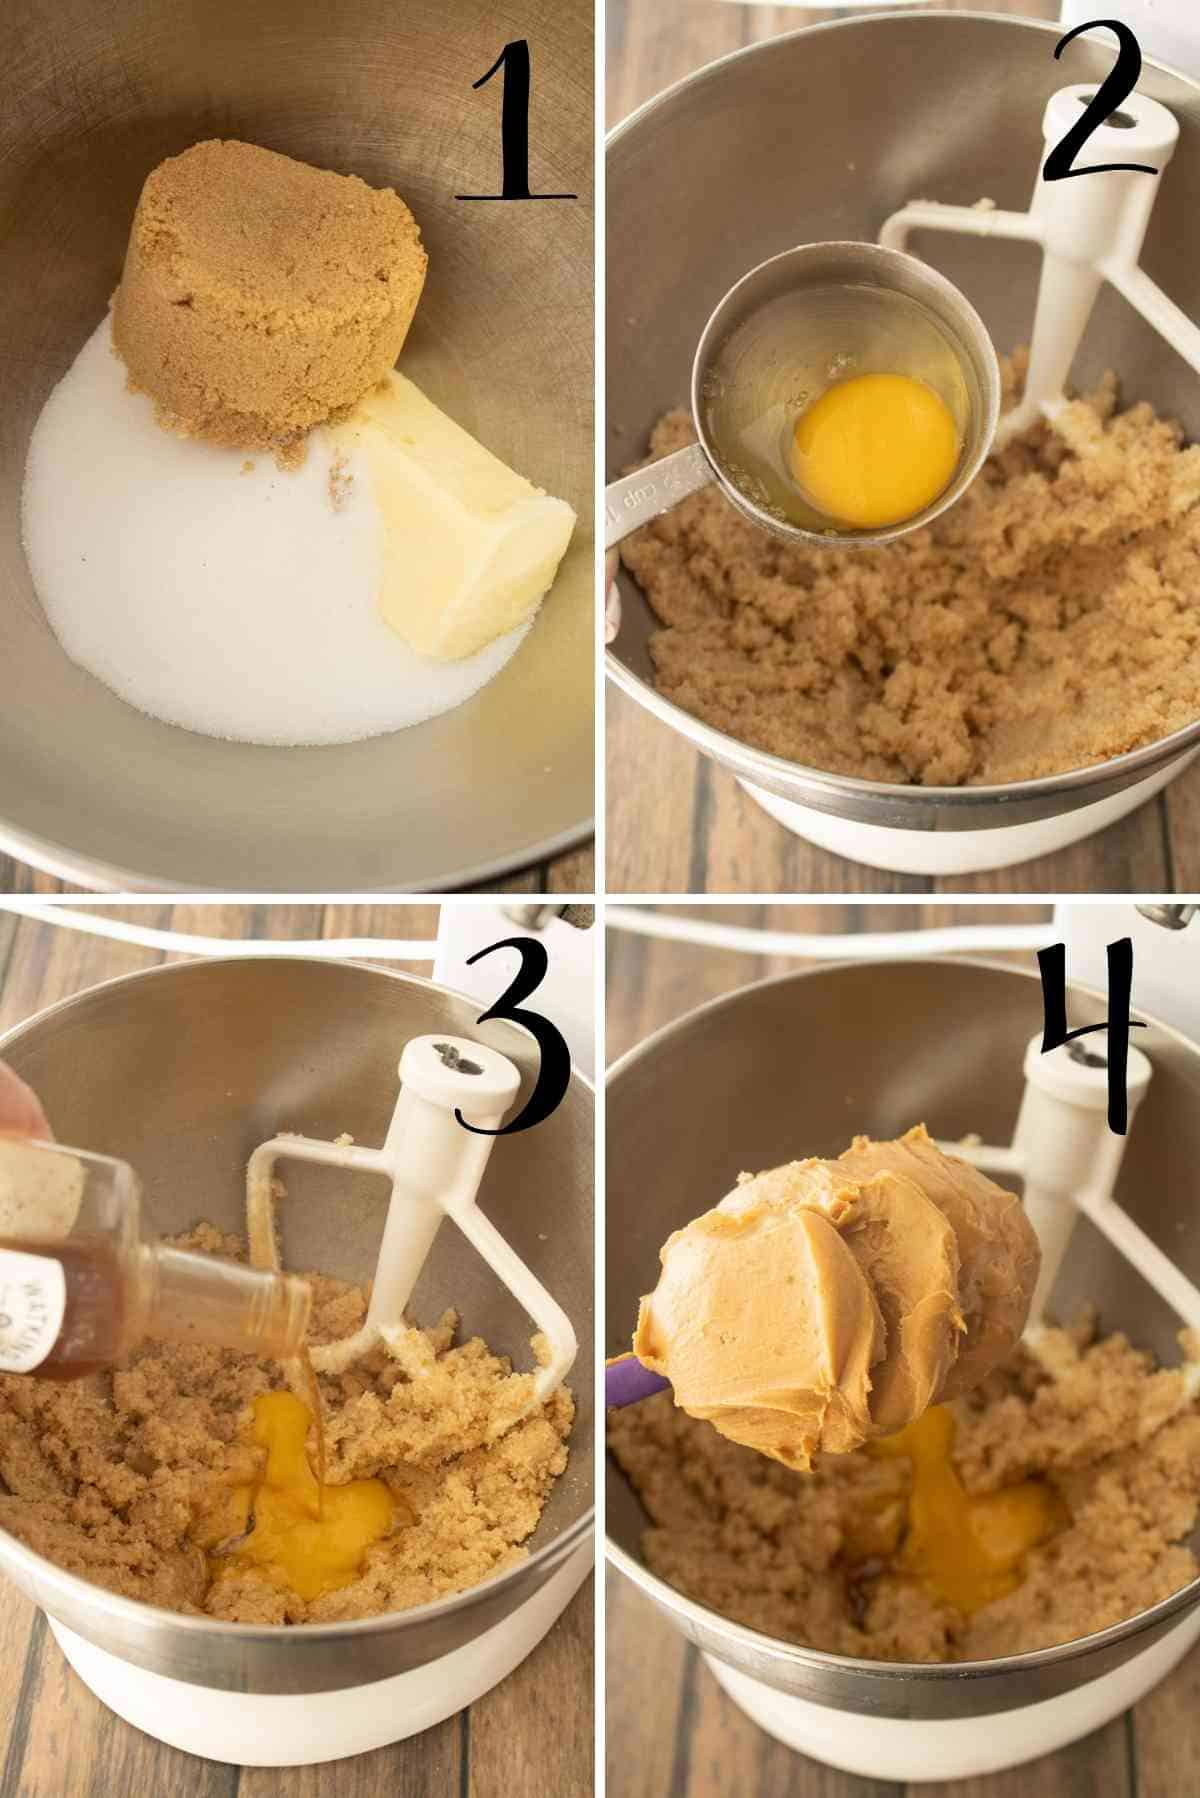 Cream sugars, butter, egg, vanilla and peanut butter.